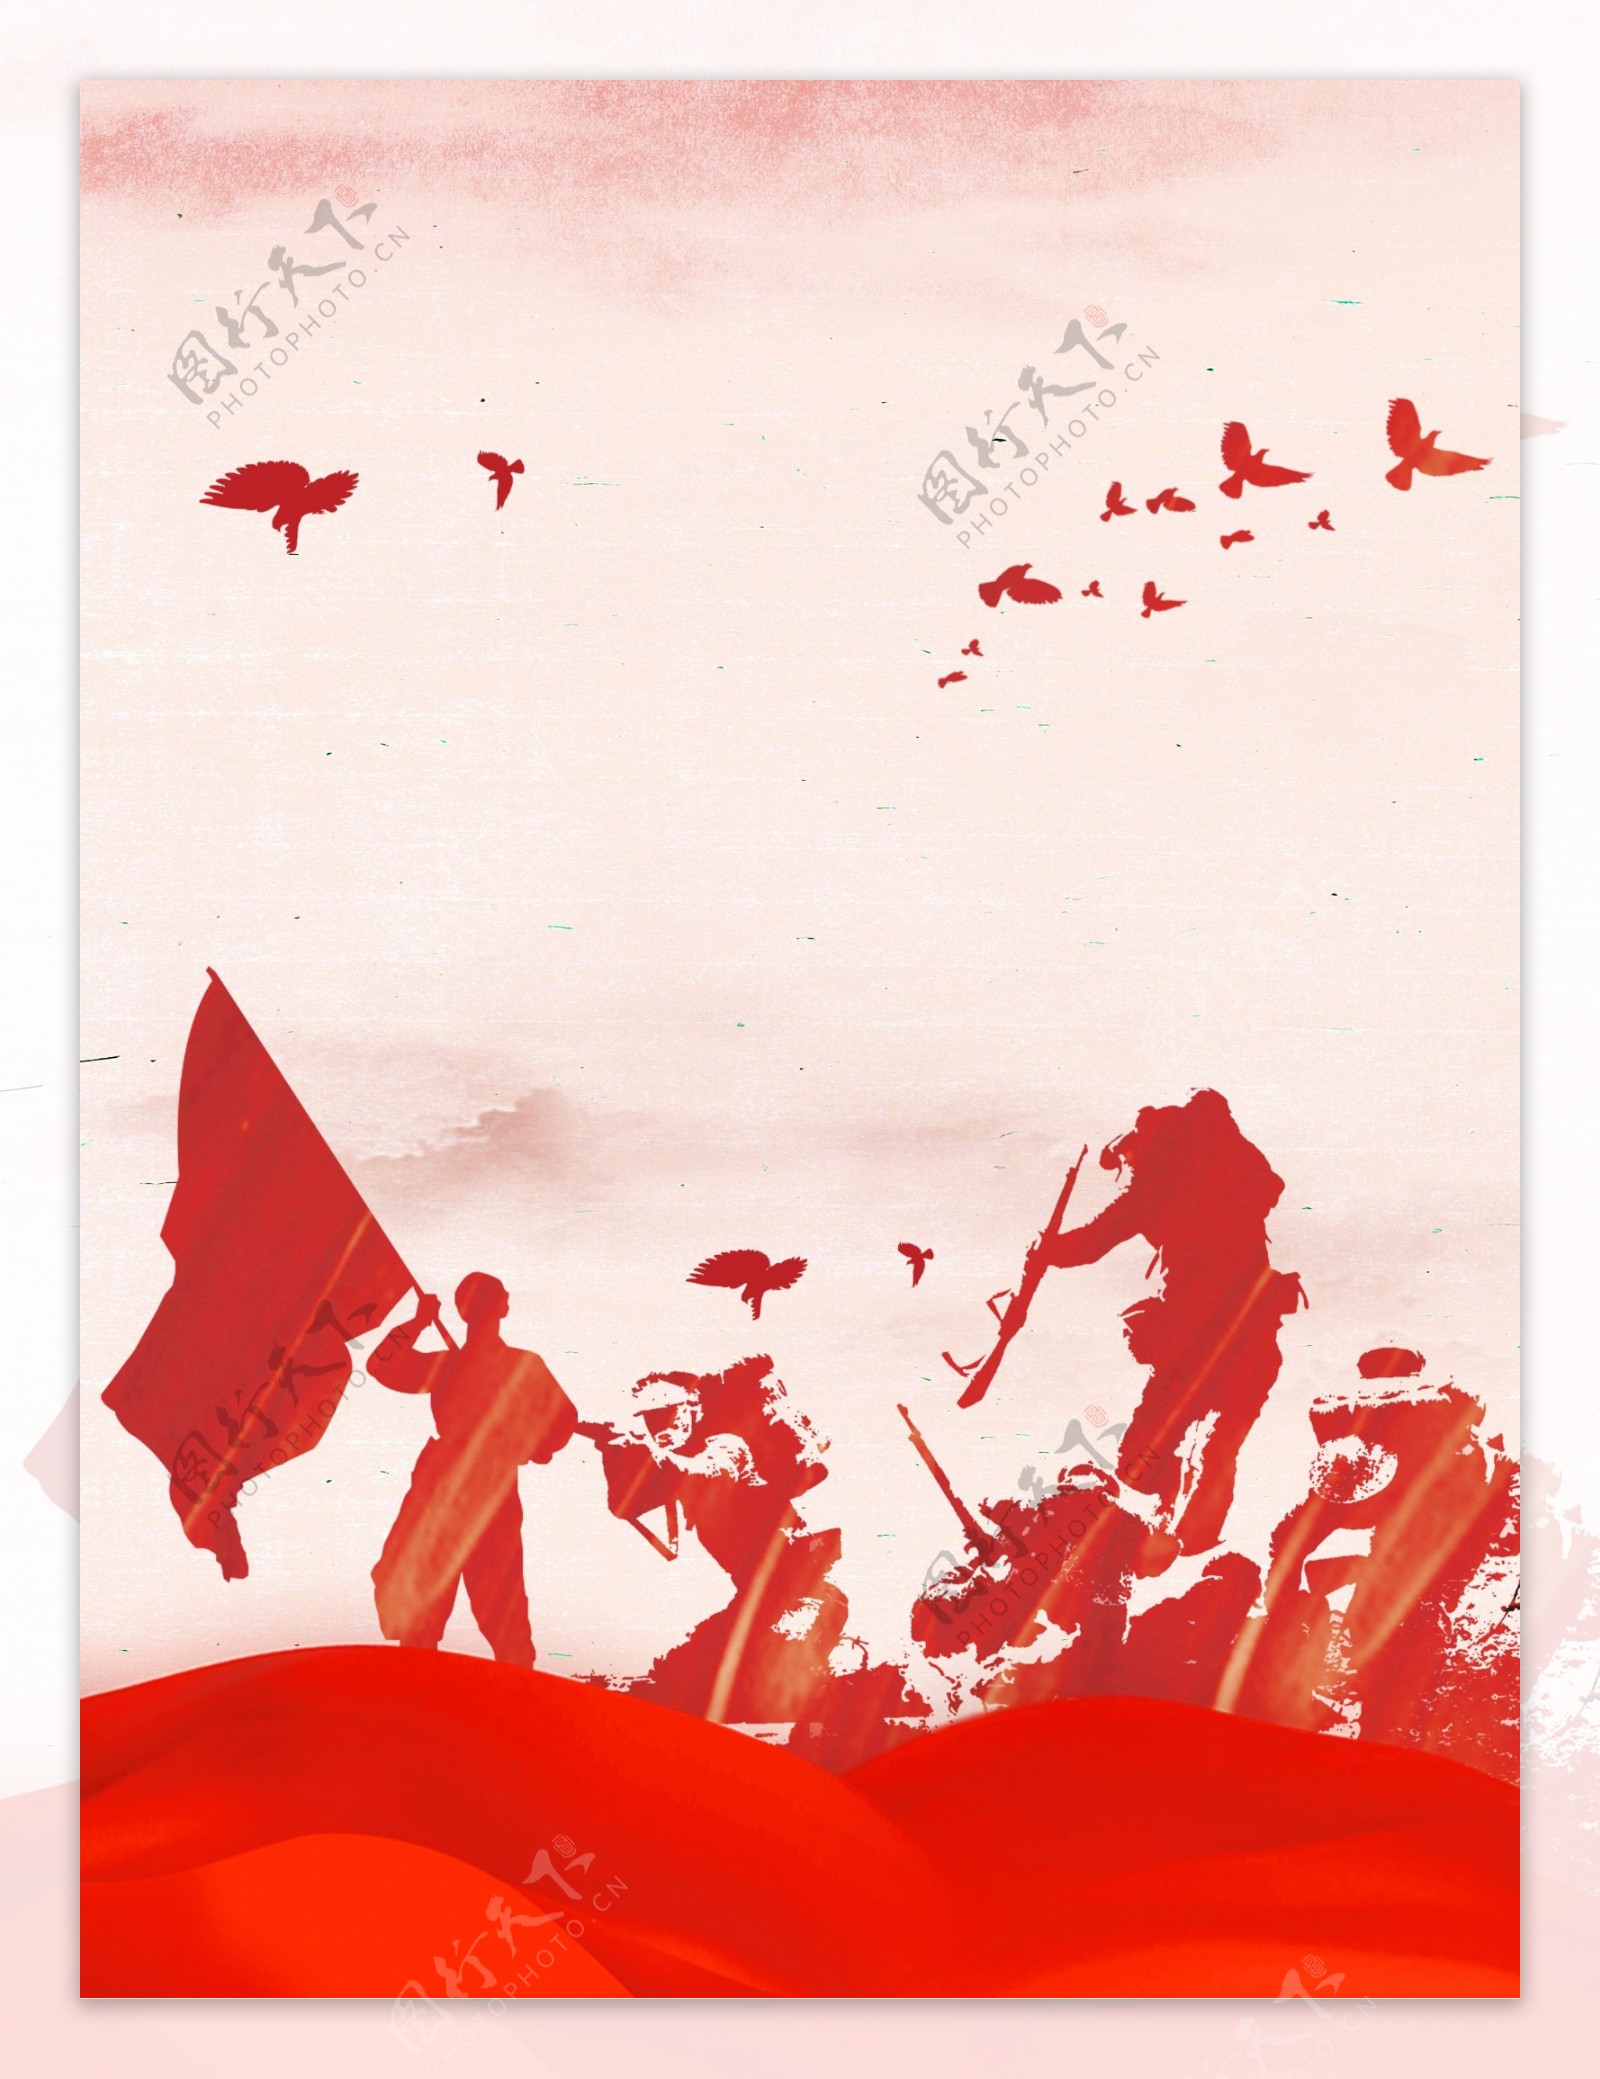 红色中国风长征军人胜利周年宣传背景